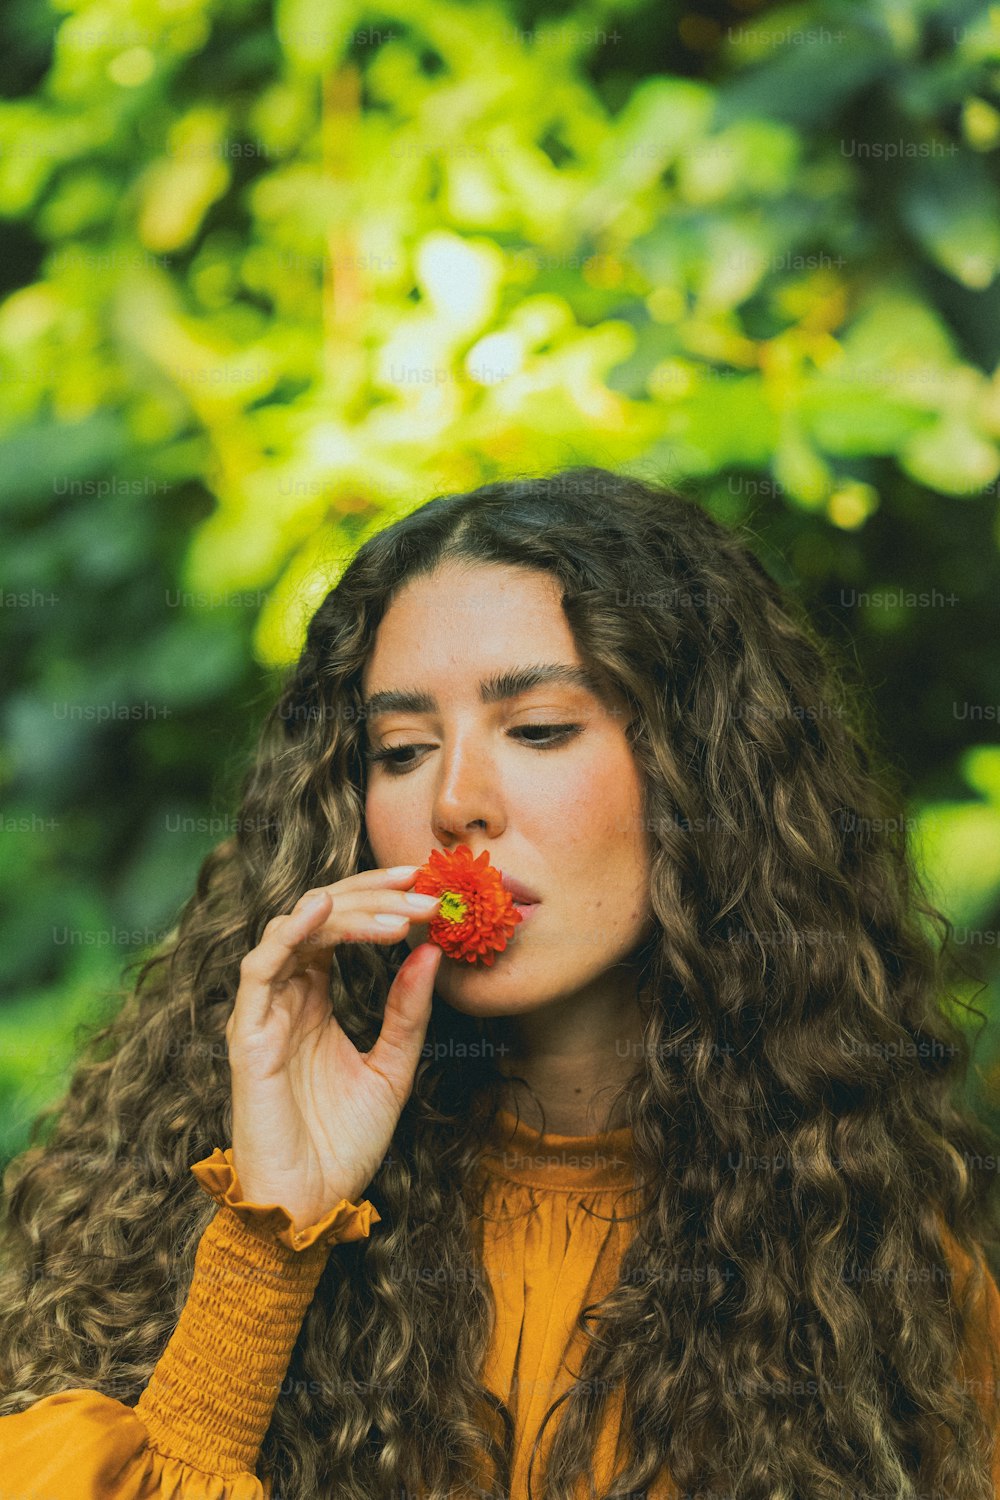 eine Frau mit langen lockigen Haaren, die eine Blume im Mund hält